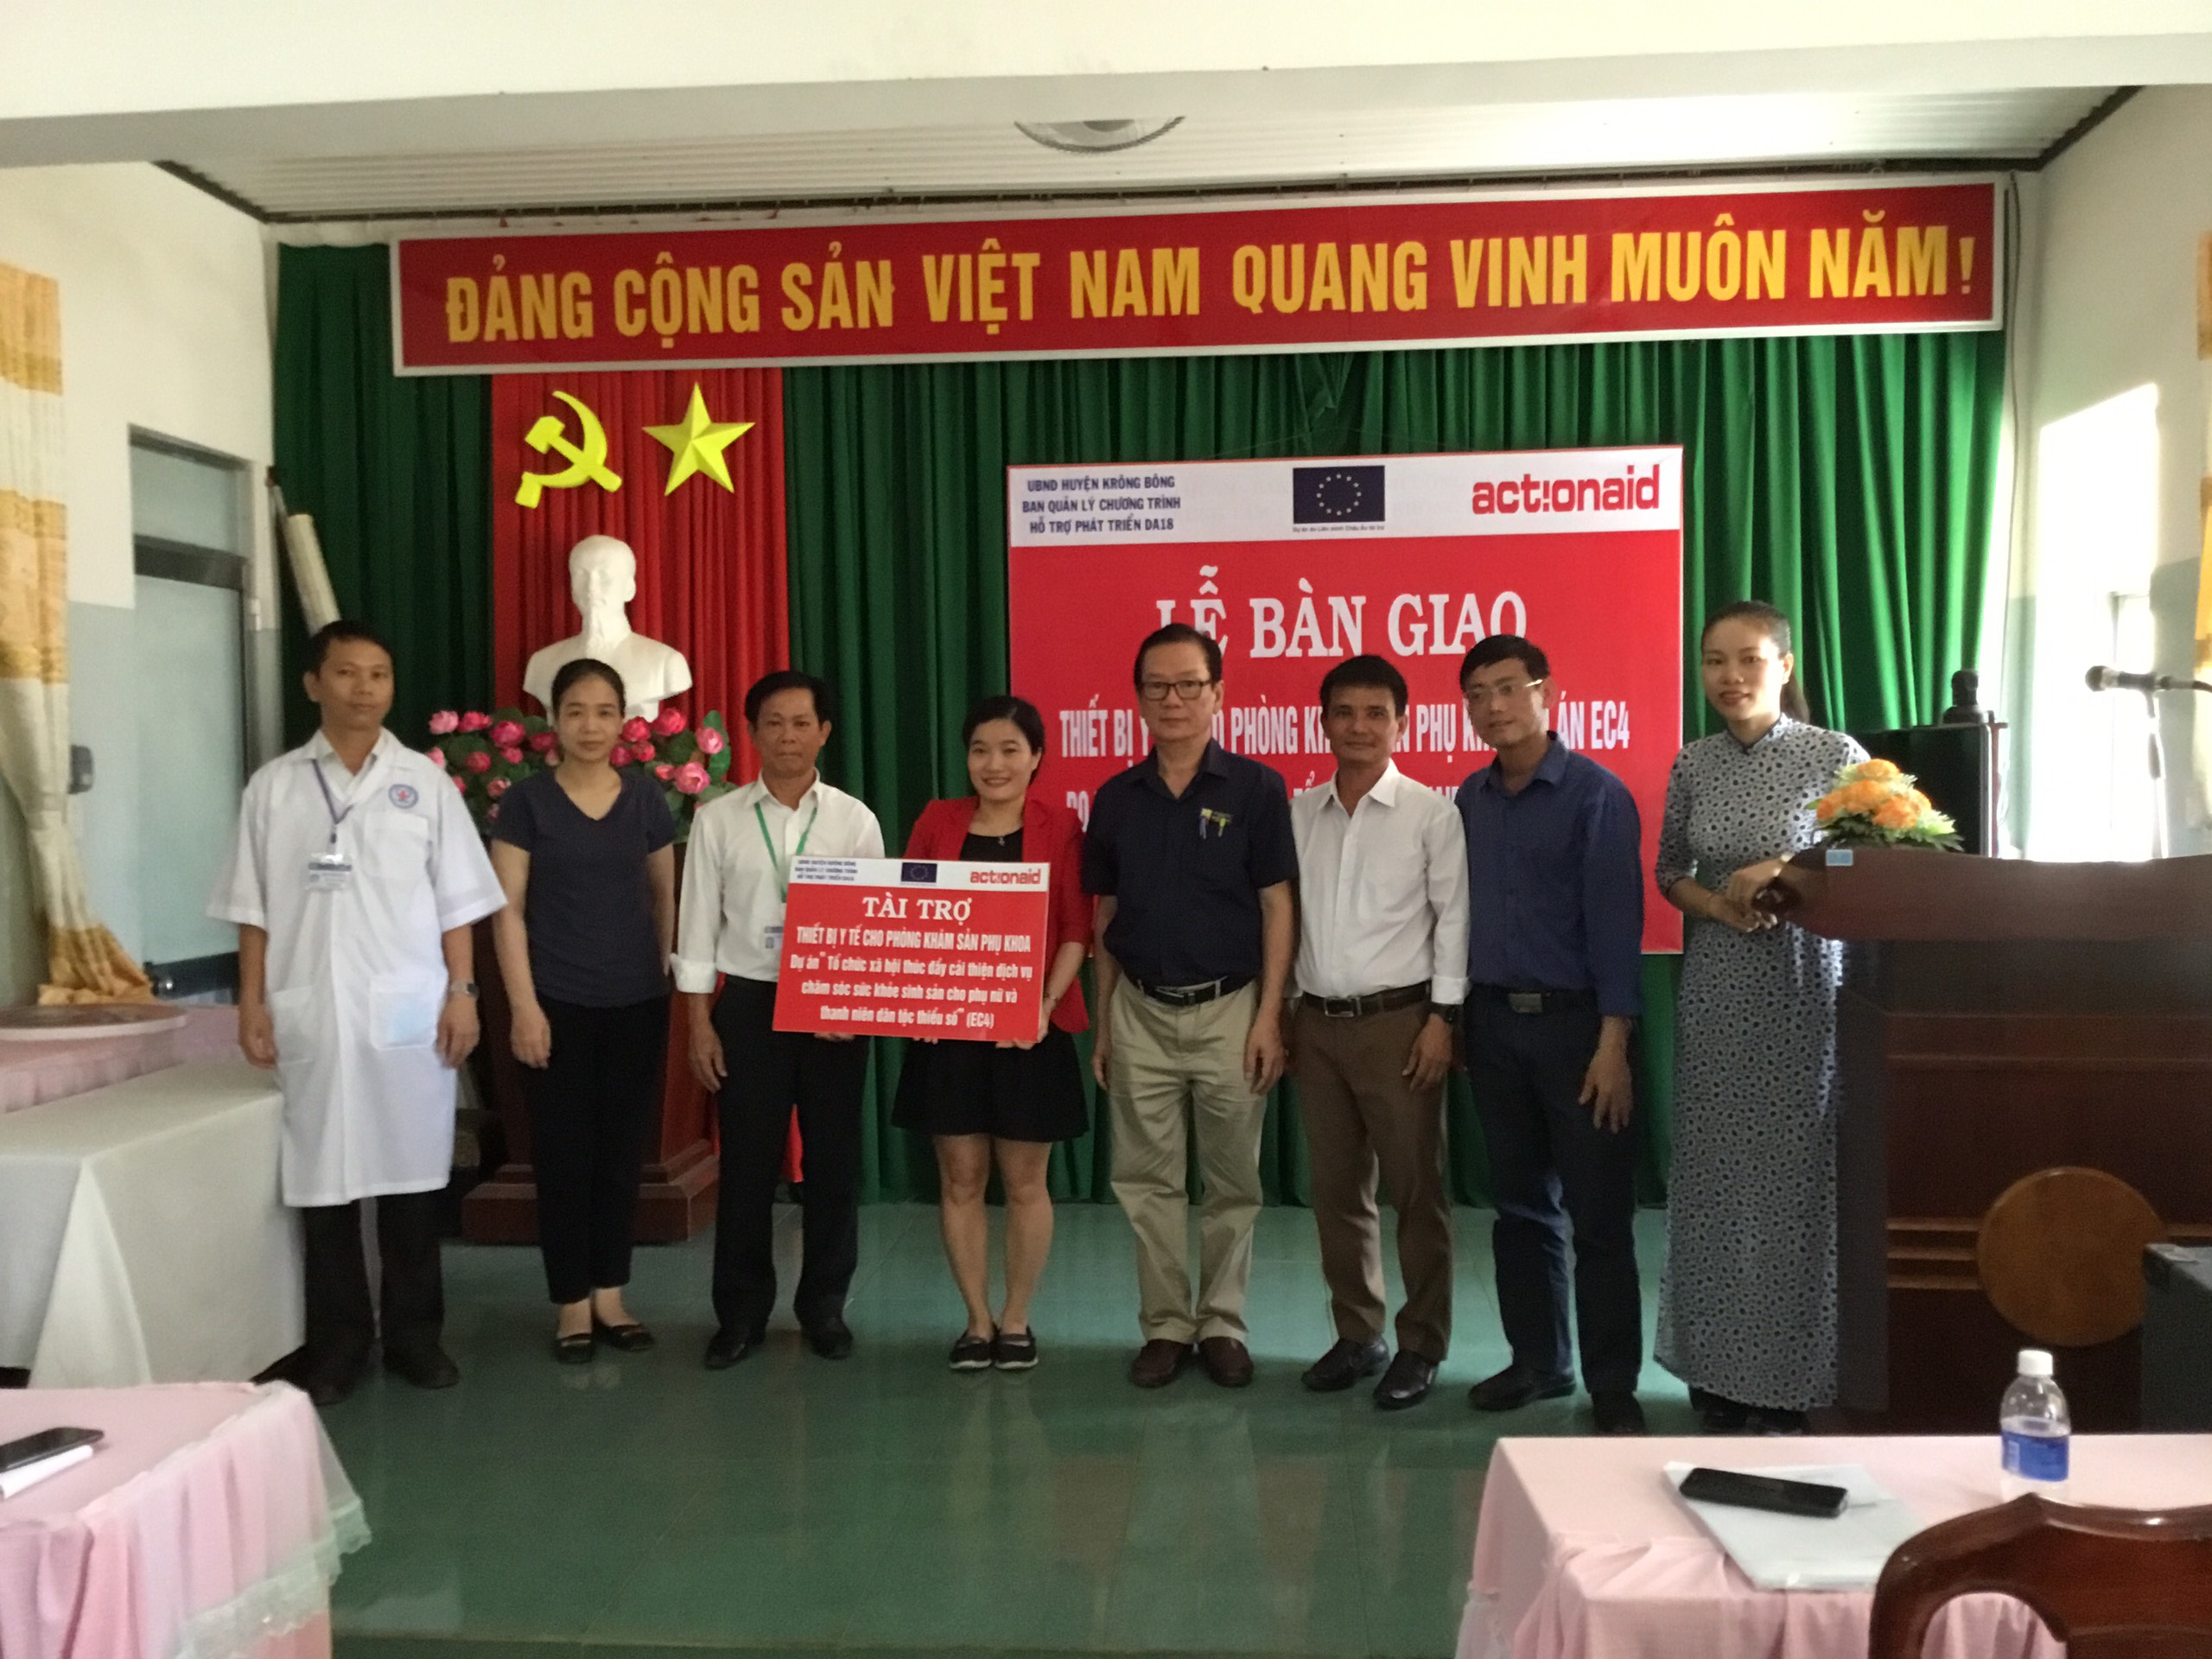 Actionnaid Việt Nam tài trợ trang thiết bị y tế cho Trung tâm Y tế huyện Krông Bông